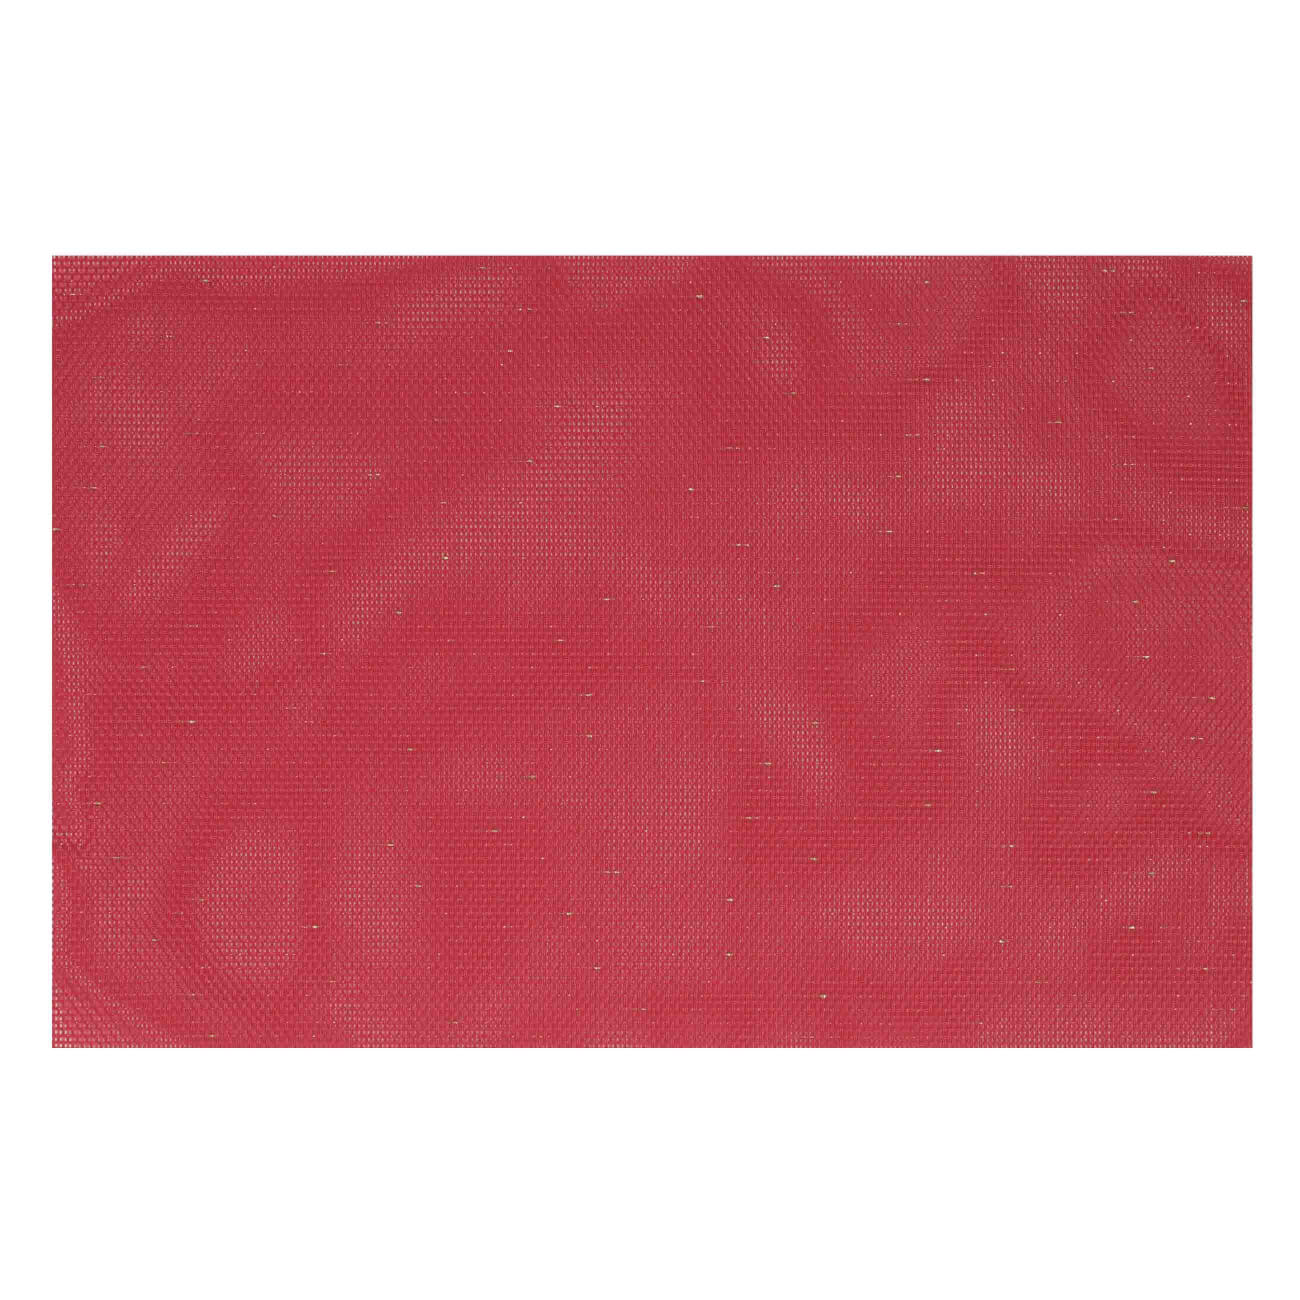 Салфетка под приборы, 30х45 см, ПВХ/полиэстер, прямоугольная, красная, Solid универсальная сверхплотная салфетка zeus